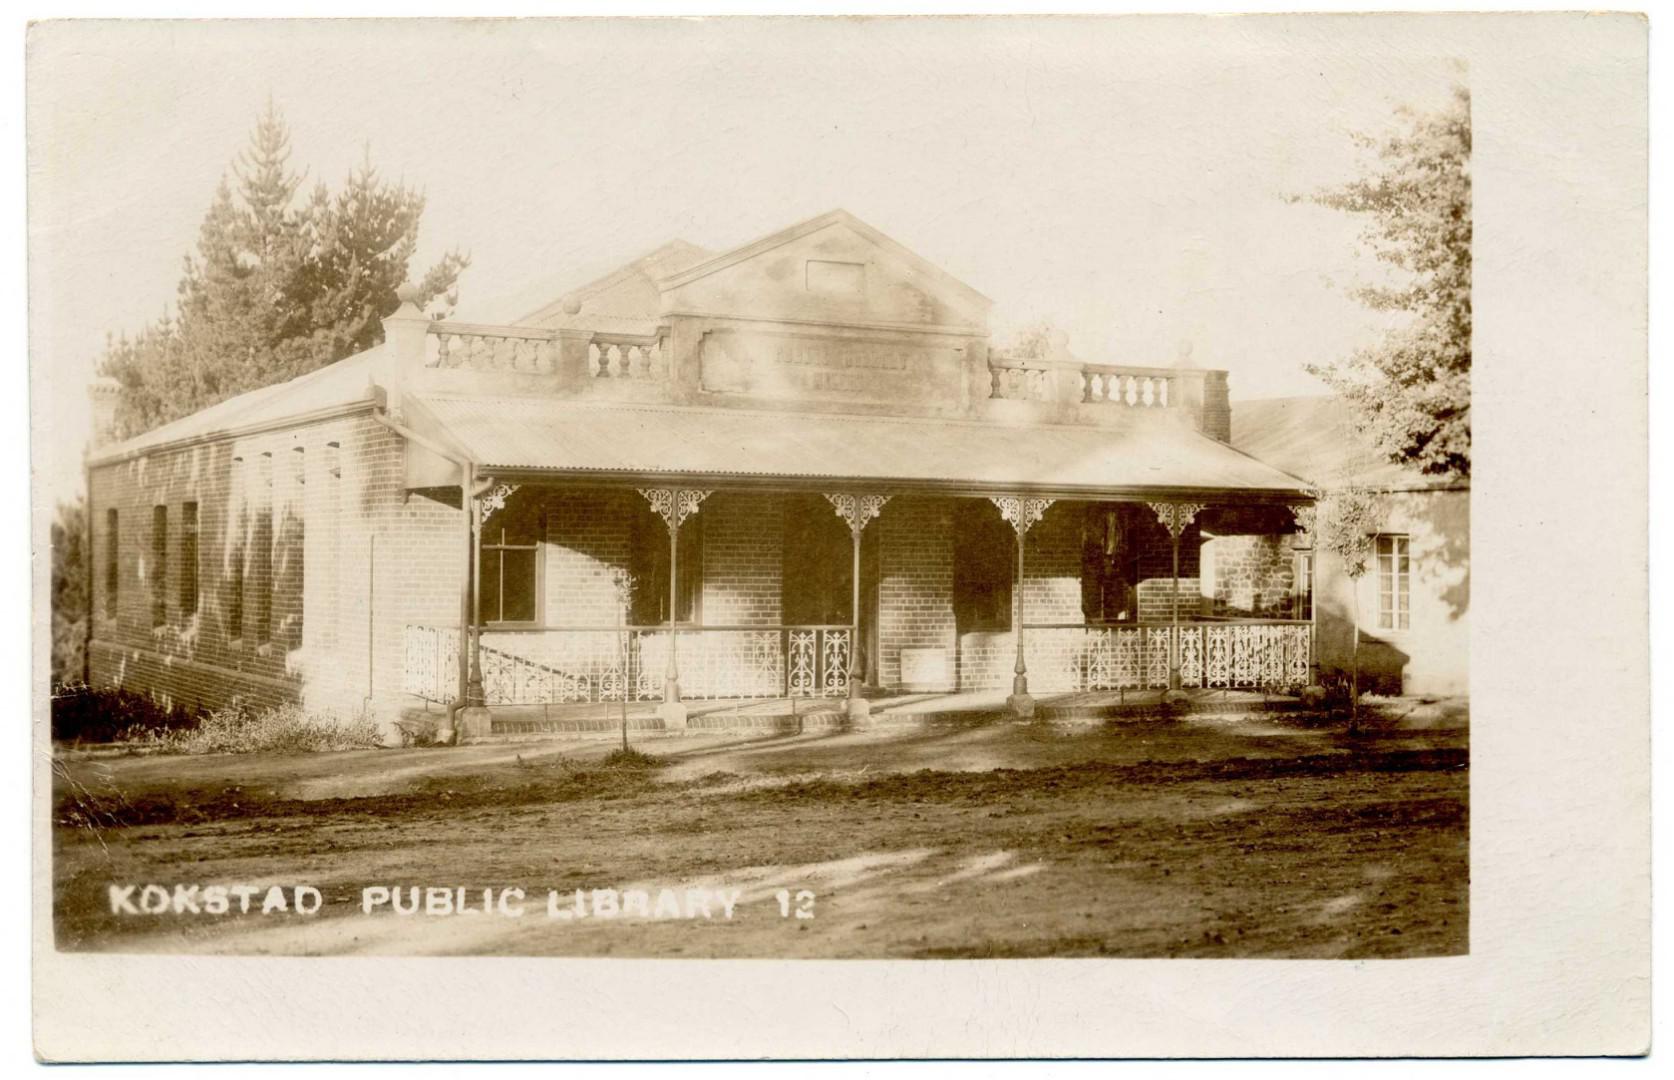 Kokstad Public Library 1908